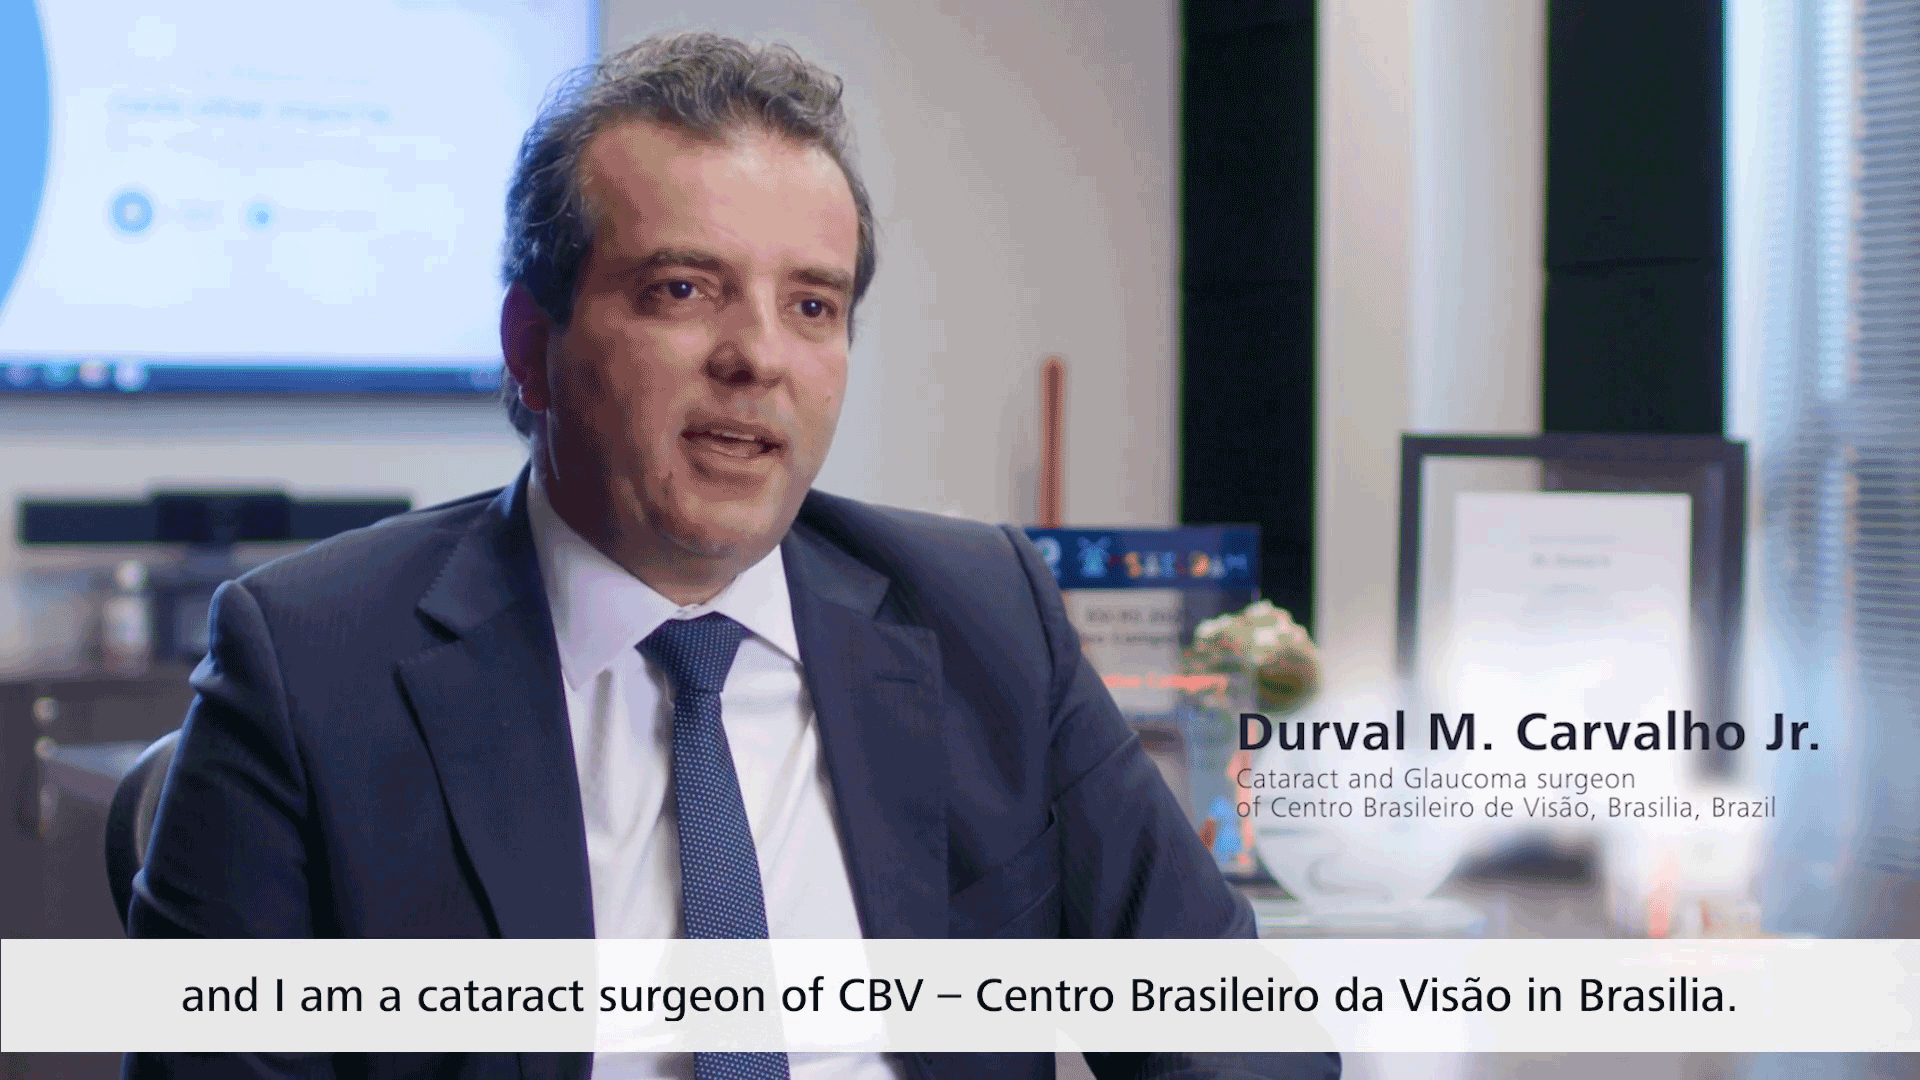 Dr. Durval M. Carvalho Jr.